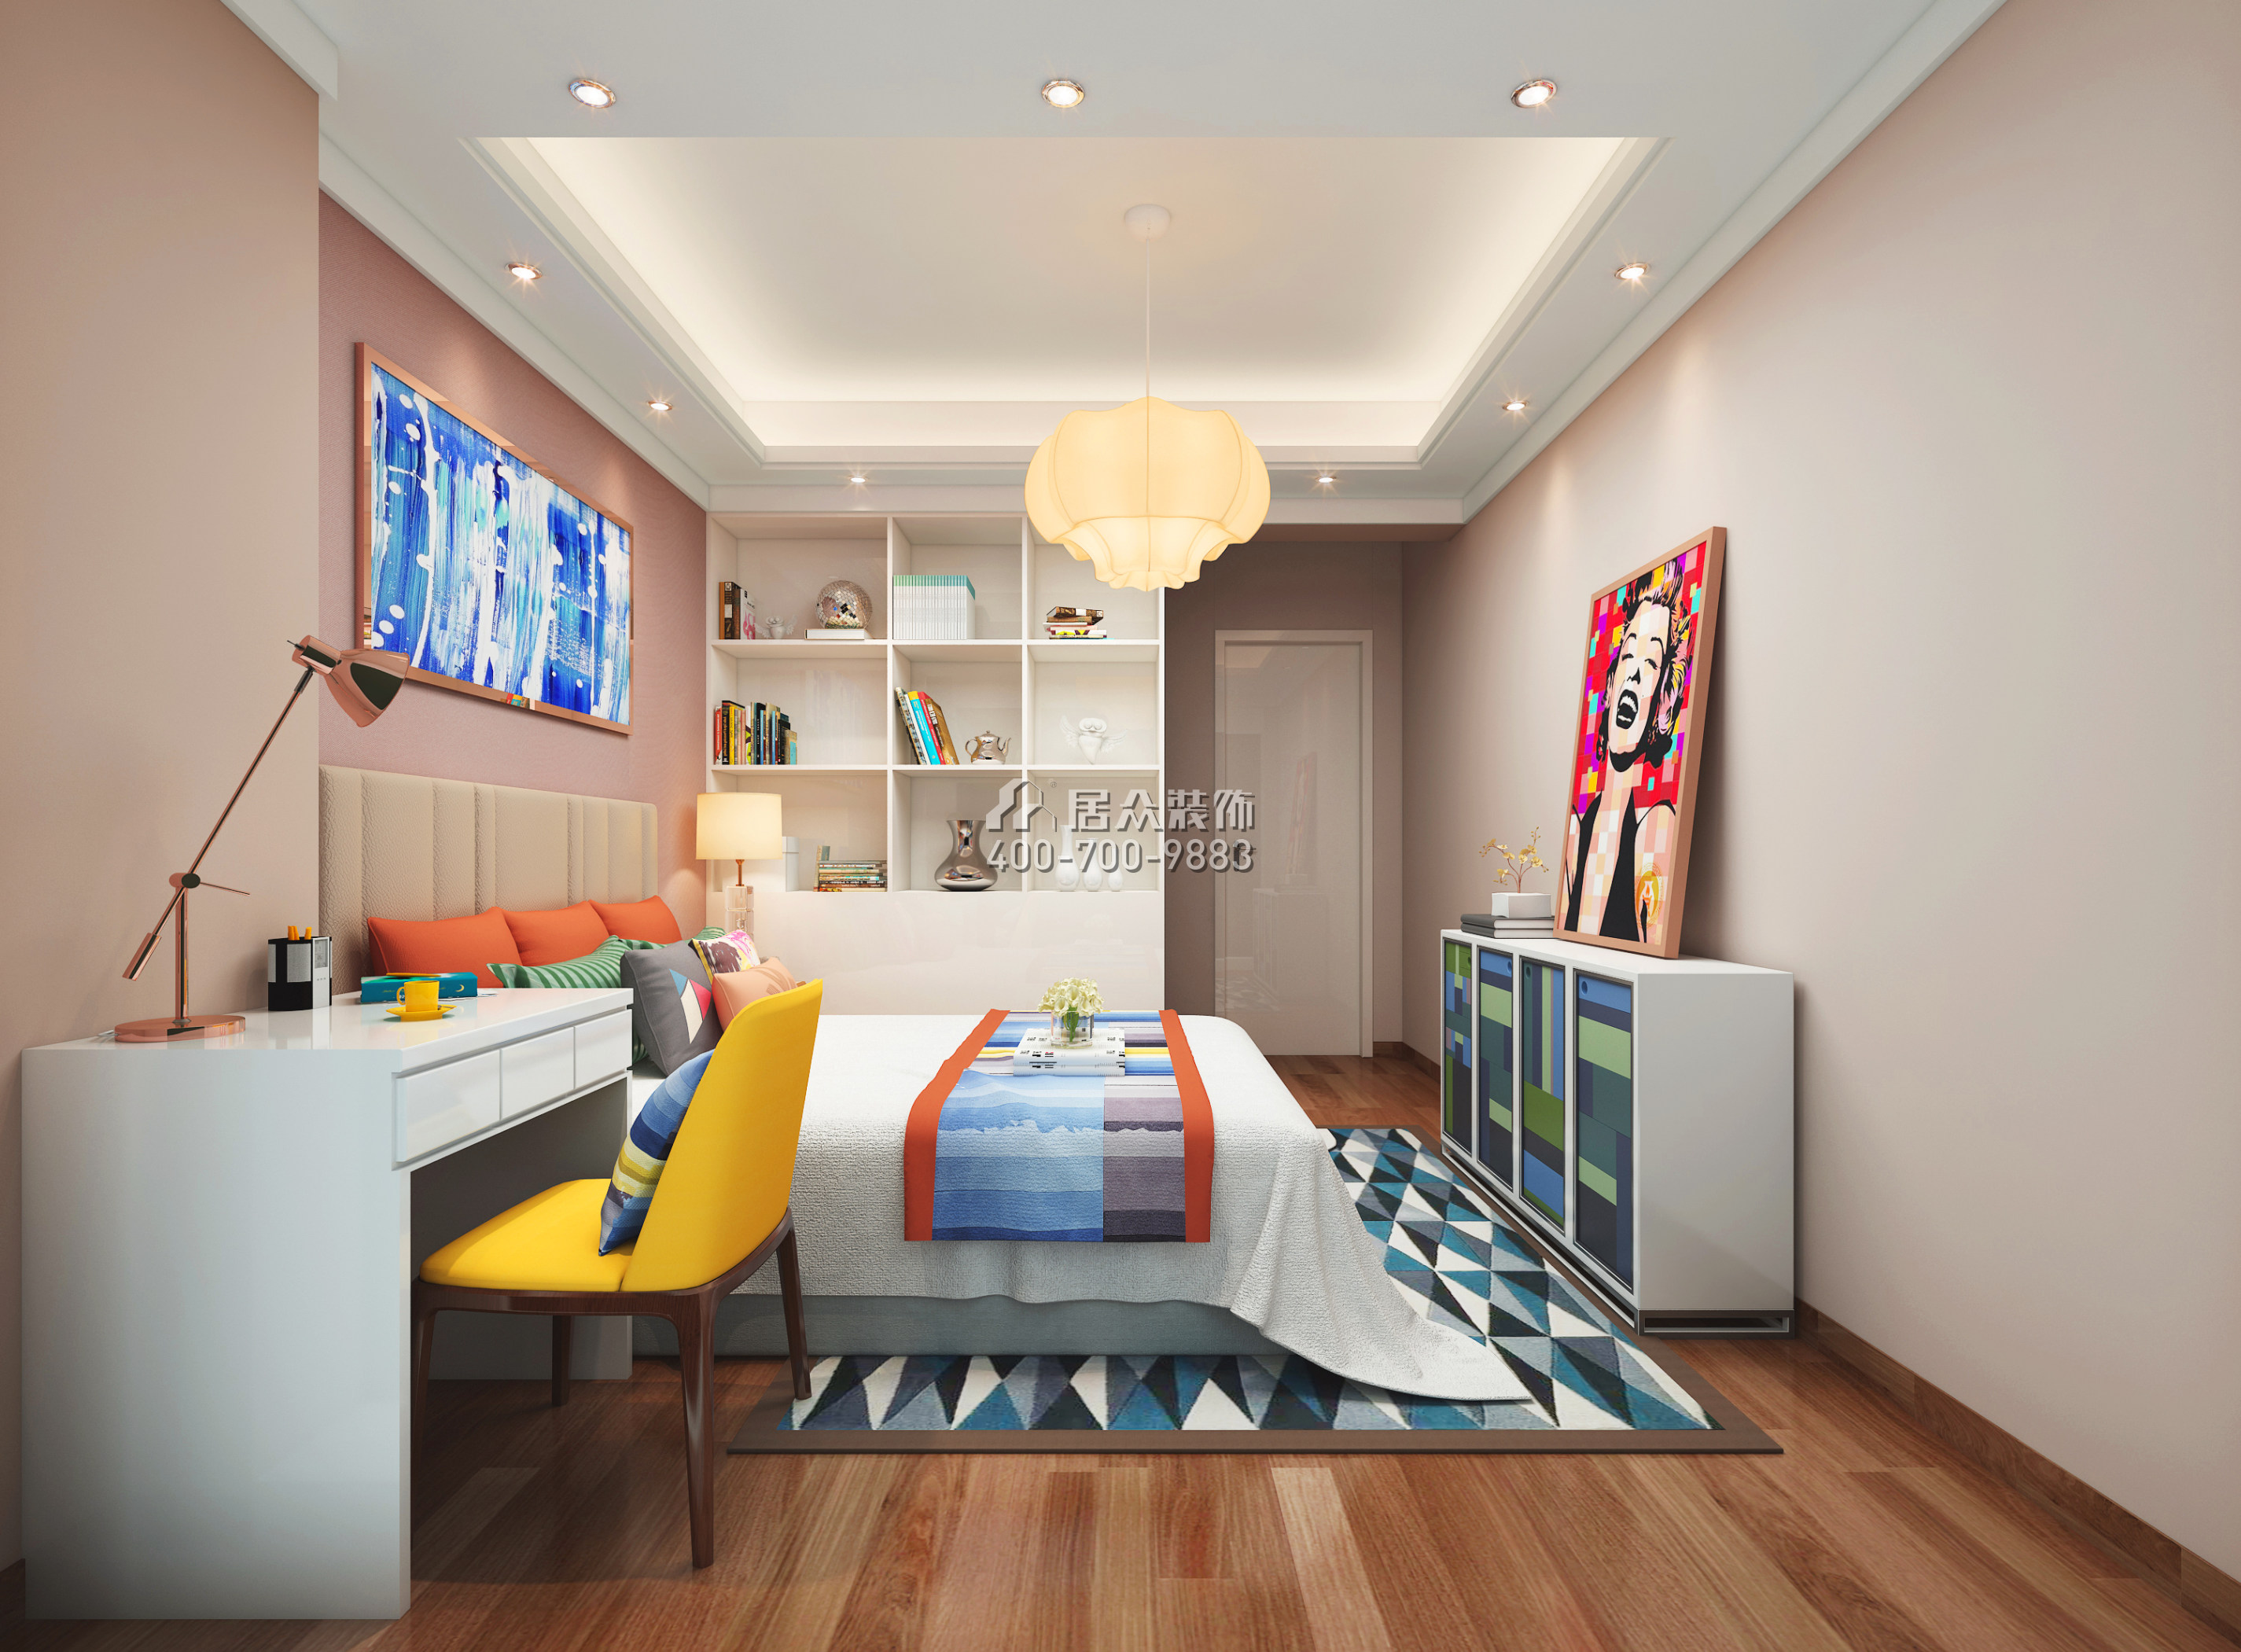 华联城市全景花园89平方米现代简约风格平层户型卧室装修效果图